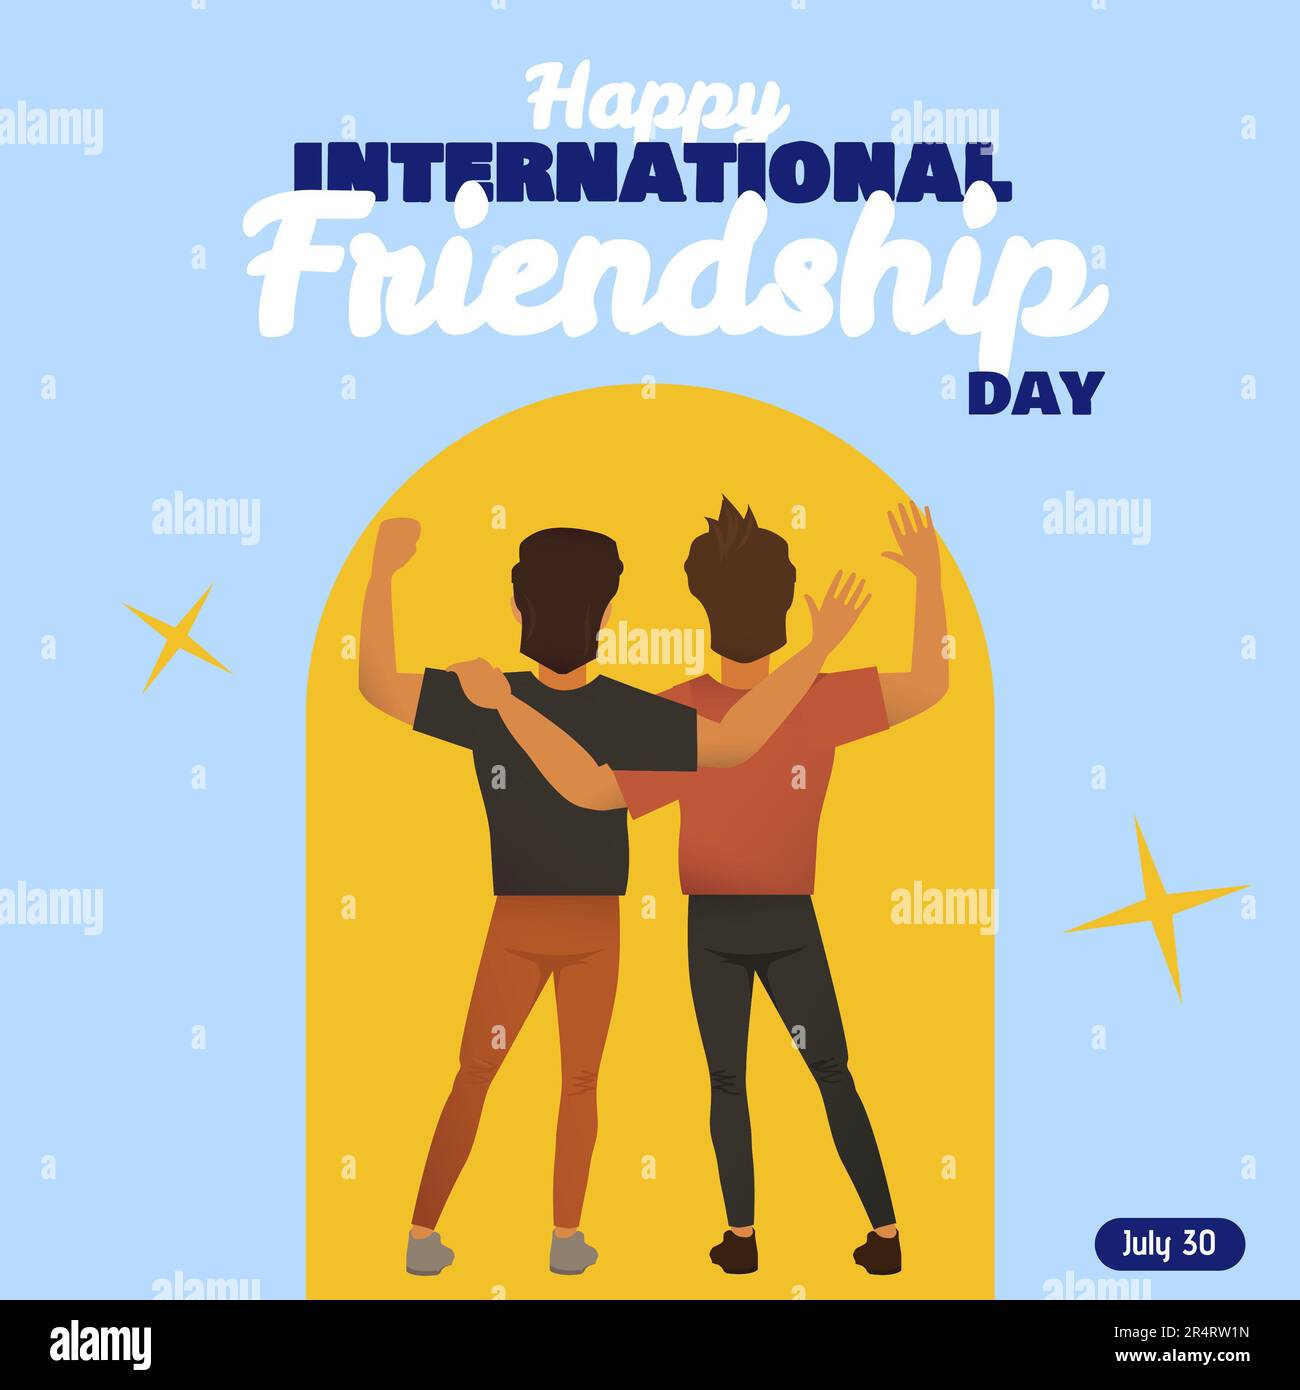 Zusammensetzung des Textes zum internationalen Freundschaftstag über männliche Freunde, die sich umarmen Stockfoto